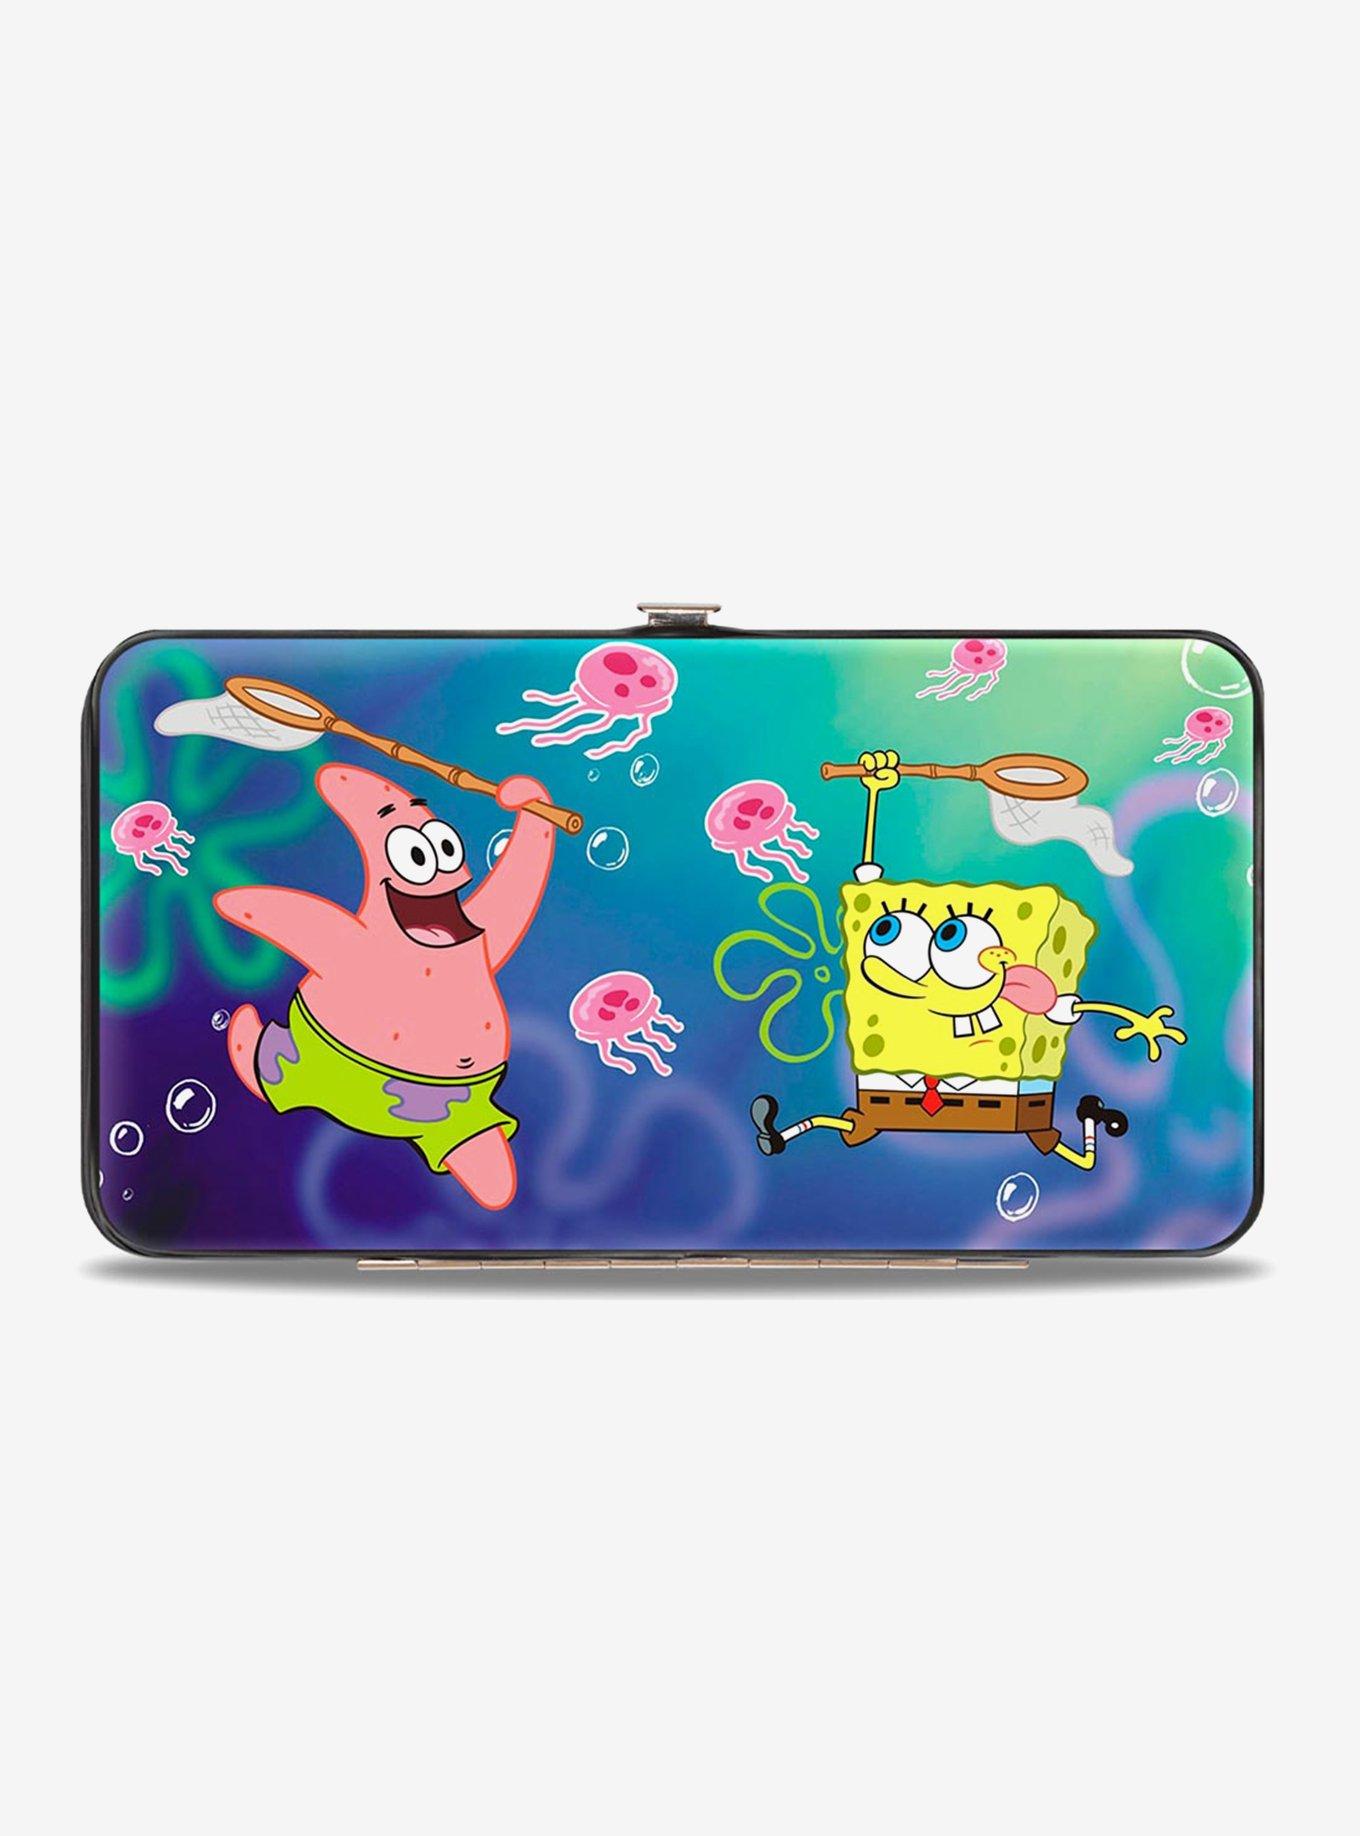 SpongeBob SquarePants Jellyfishin' Patrick Star Phunny Plush